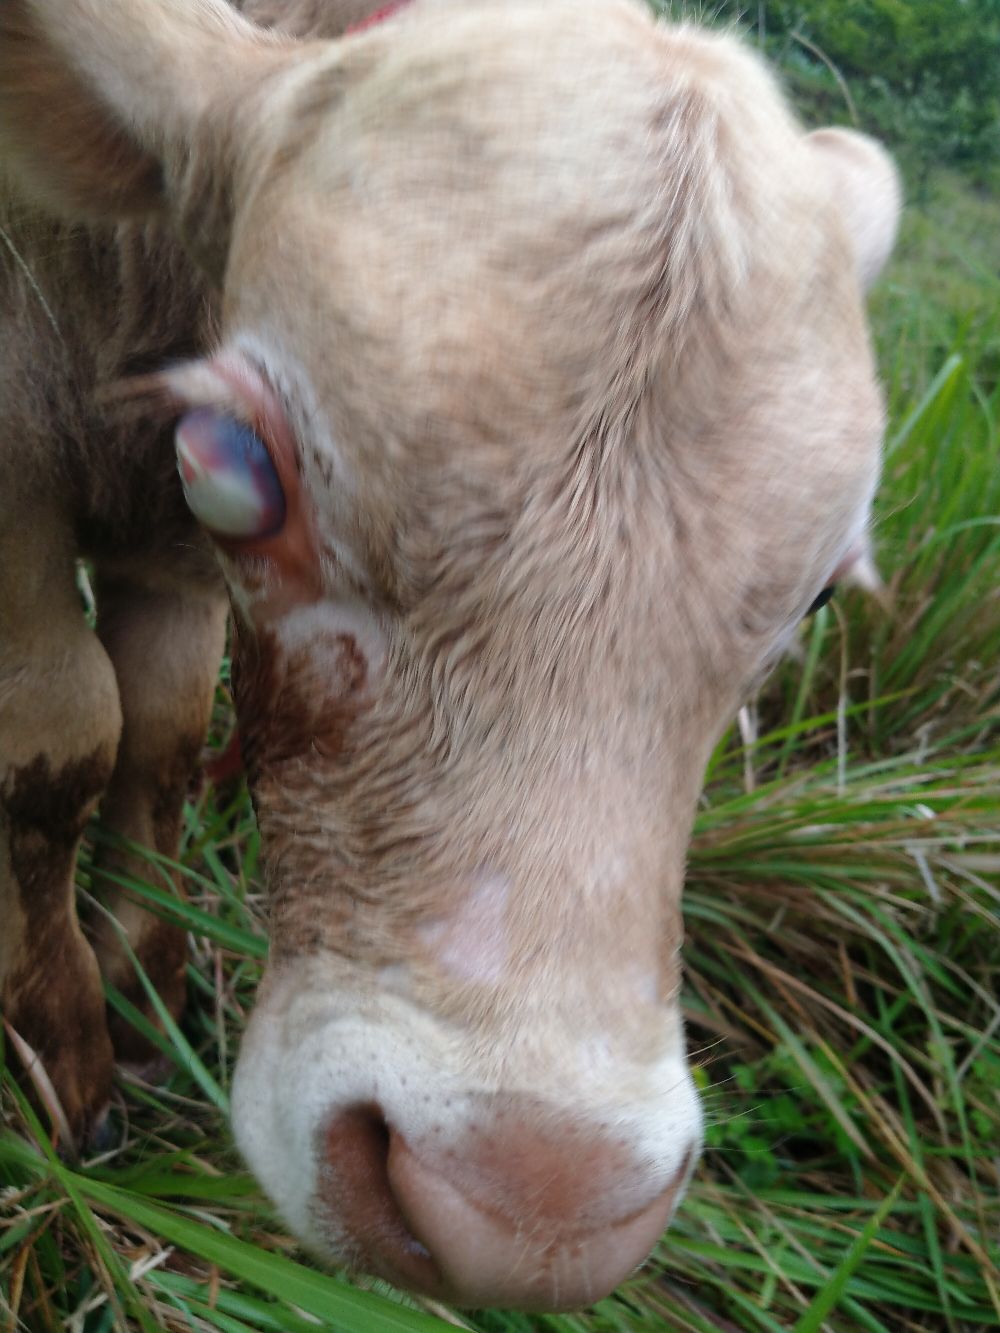 小牛刚出生就一个眼睛肿大现在眼球泛白经常流眼泪请问专家小牛这是